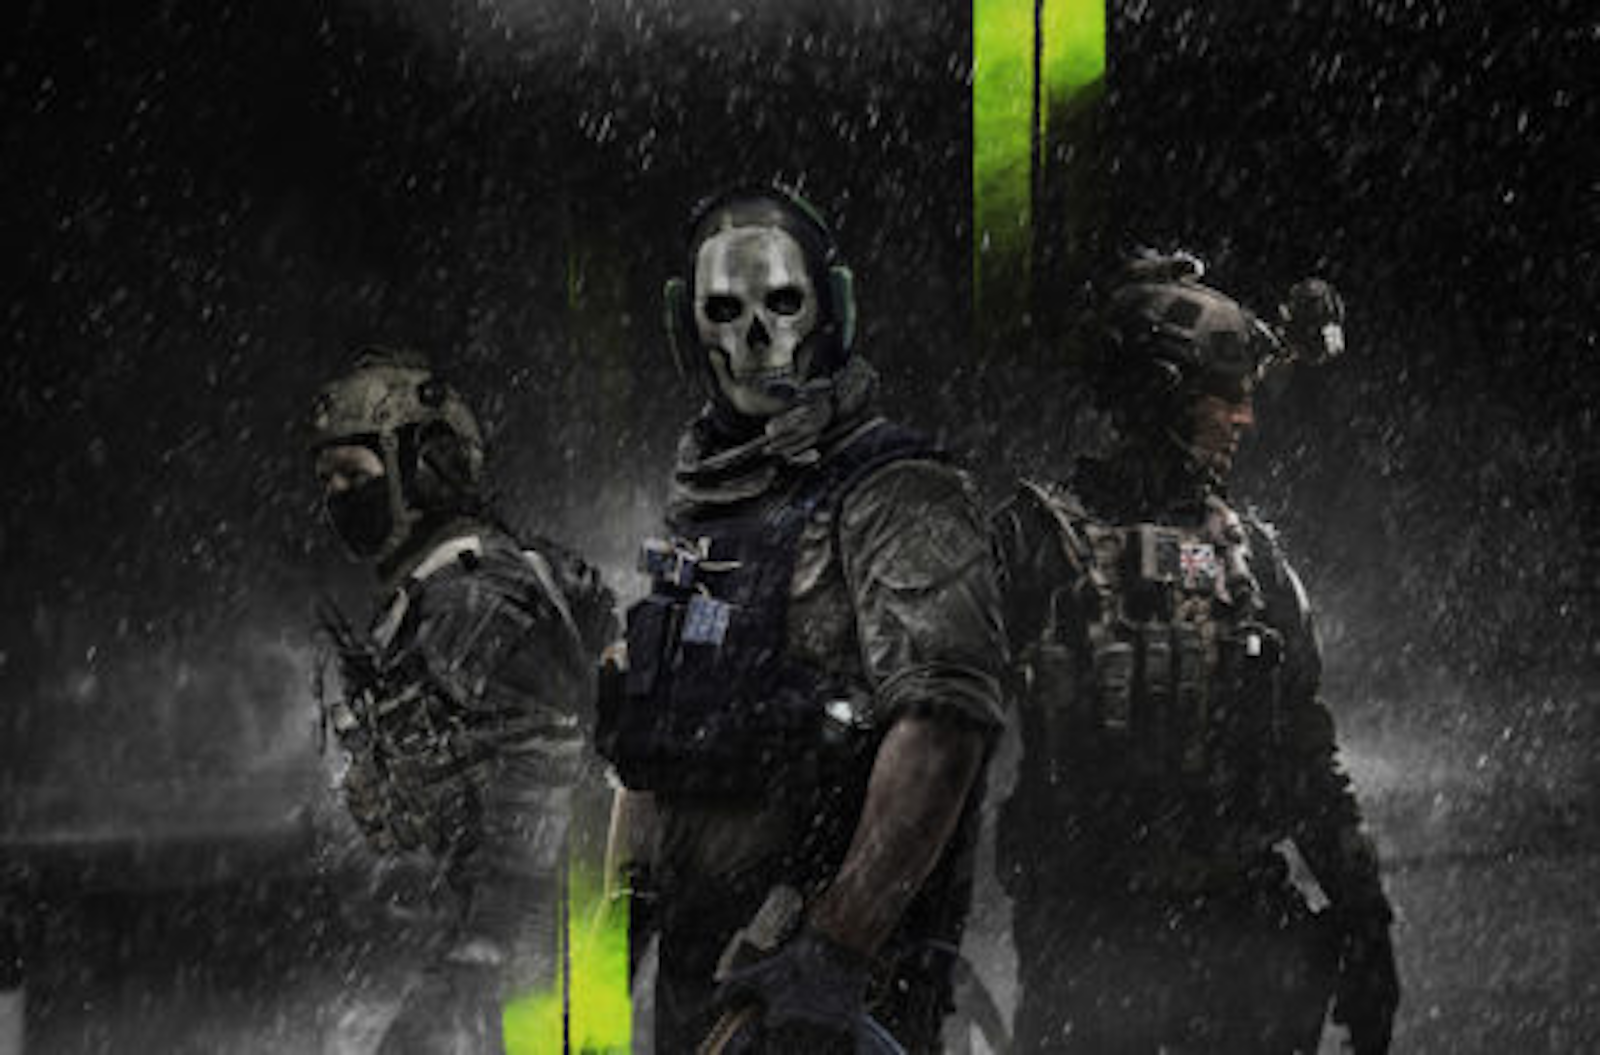 Original Modern Warfare 2 Steam Servers Shut Down Due to Malware Attack  (Update) - MP1st